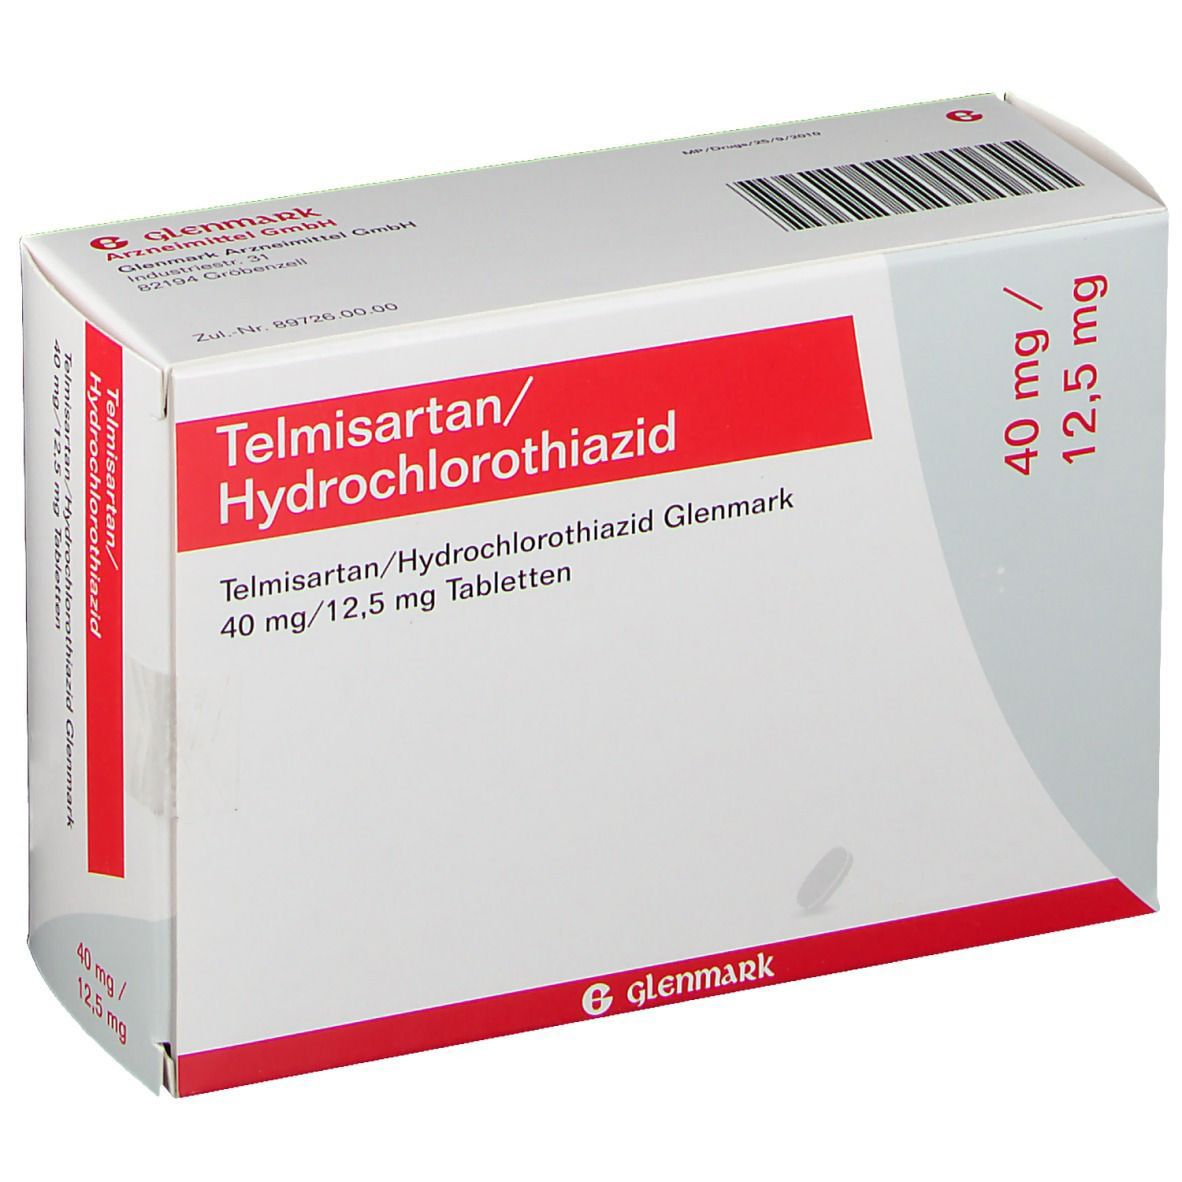 Telmisartan/Hydrochlorothiazid Glenmark 40 mg/12,5 mg